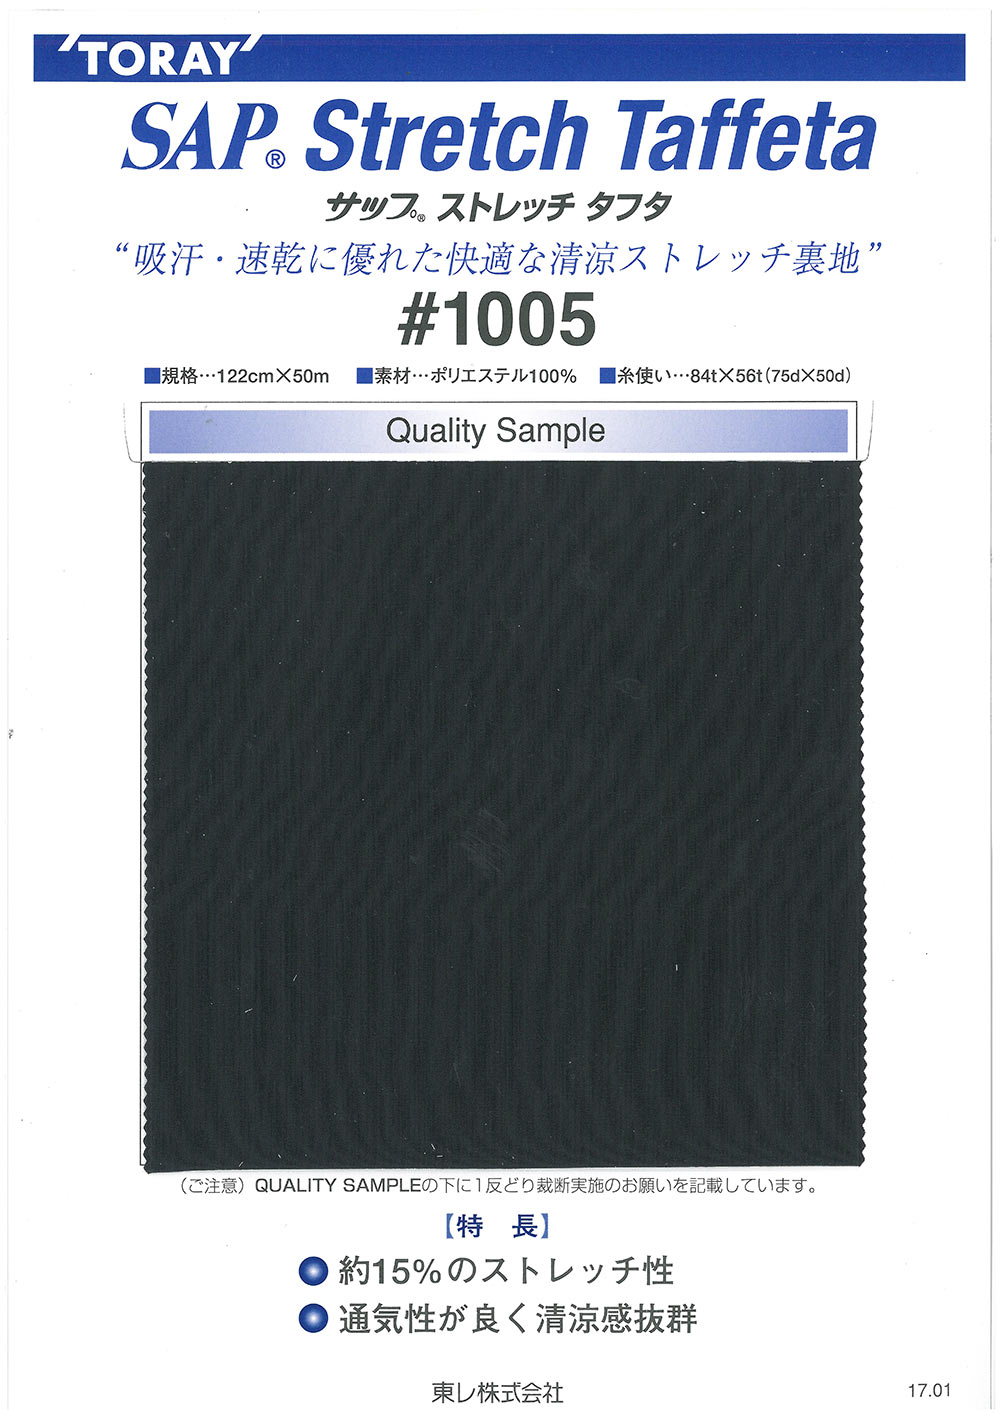 1005 Forro SAP Cool Stretch (Absorção De Suor, Secagem Rápida)[Resina] TORAY